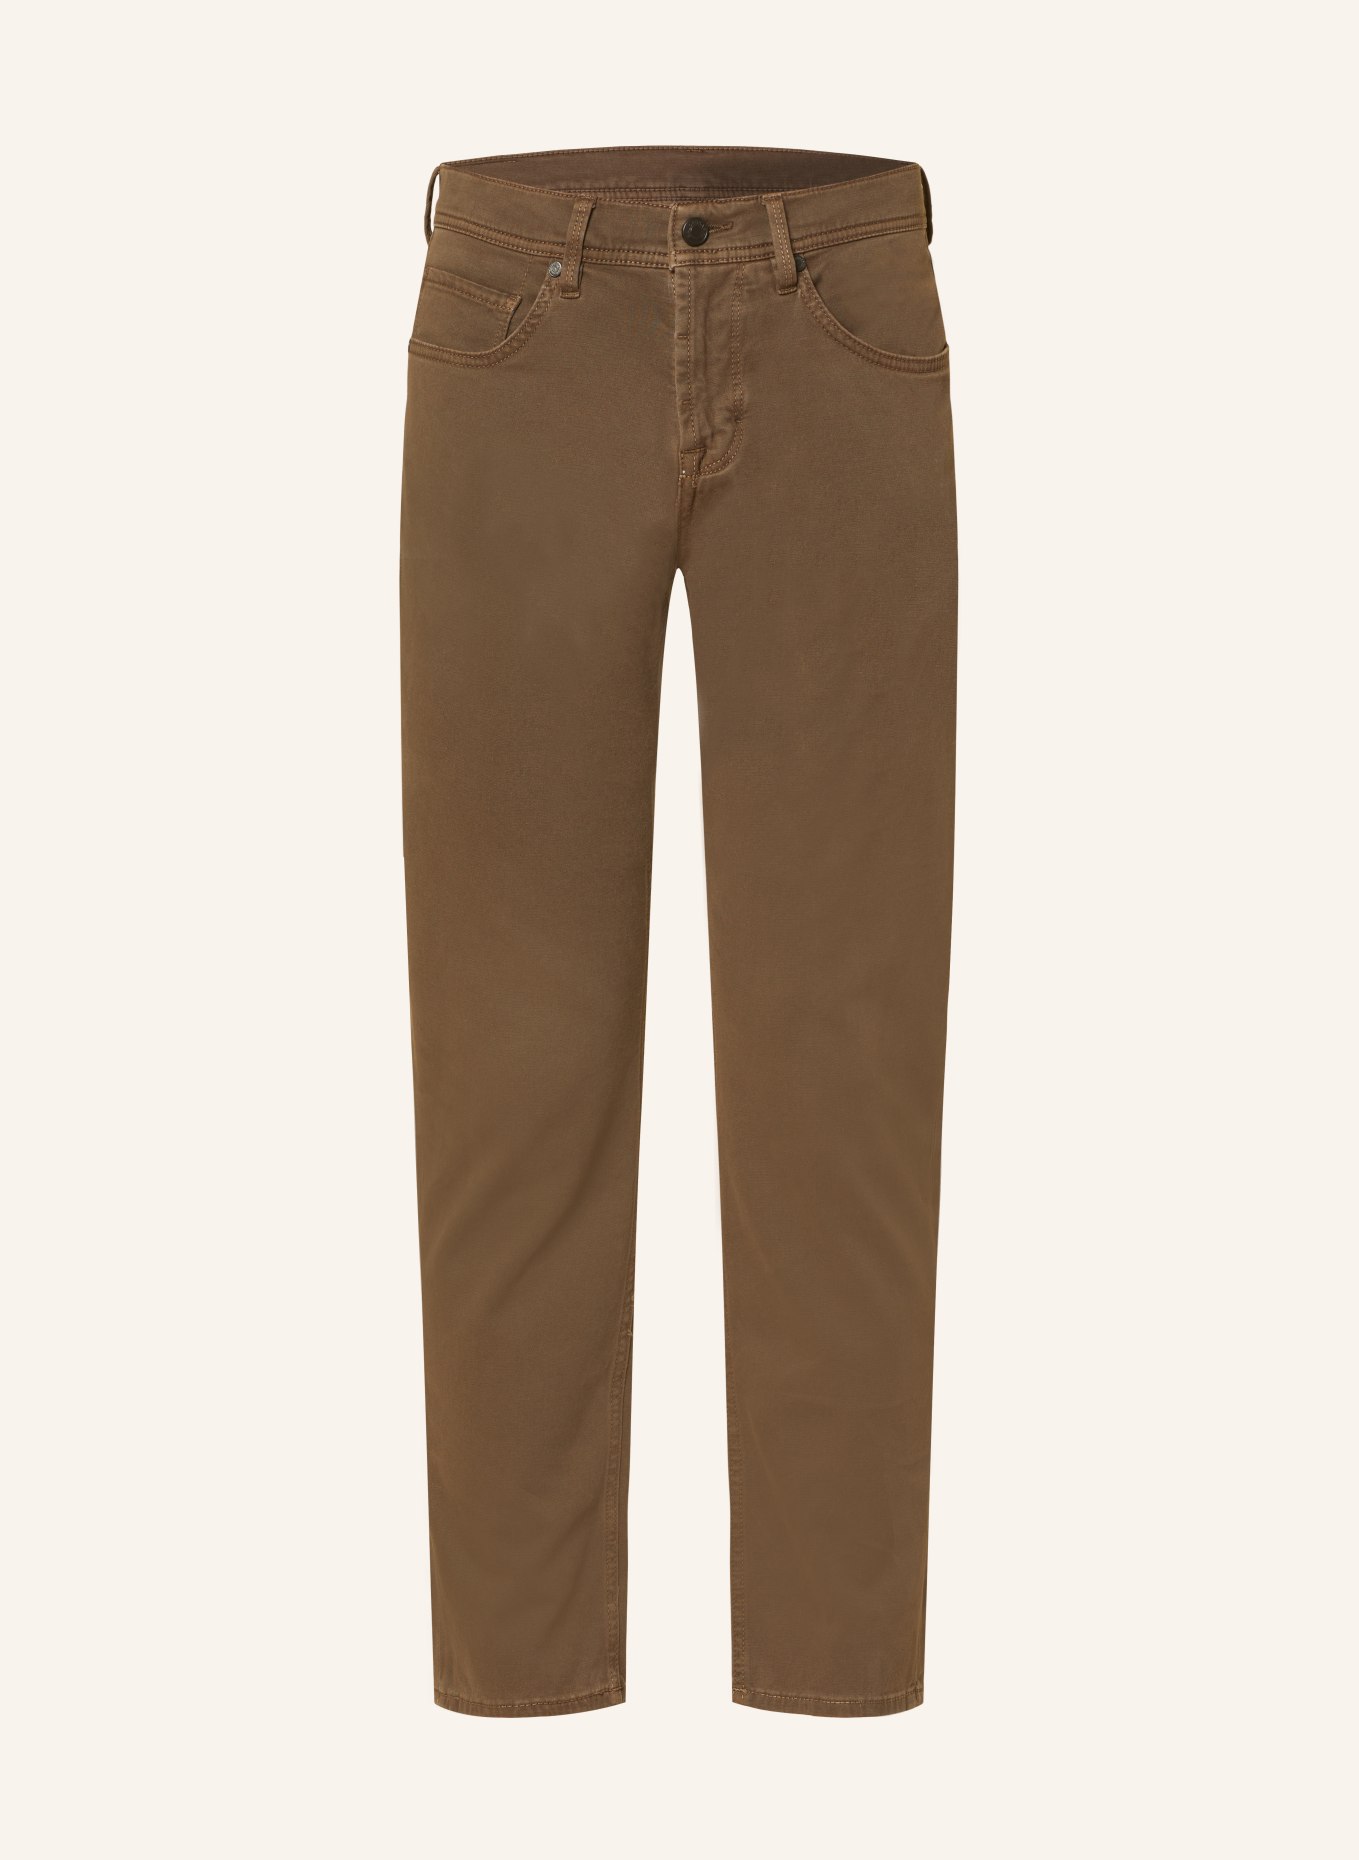 BALDESSARINI Trousers regular fit, Color: BROWN (Image 1)